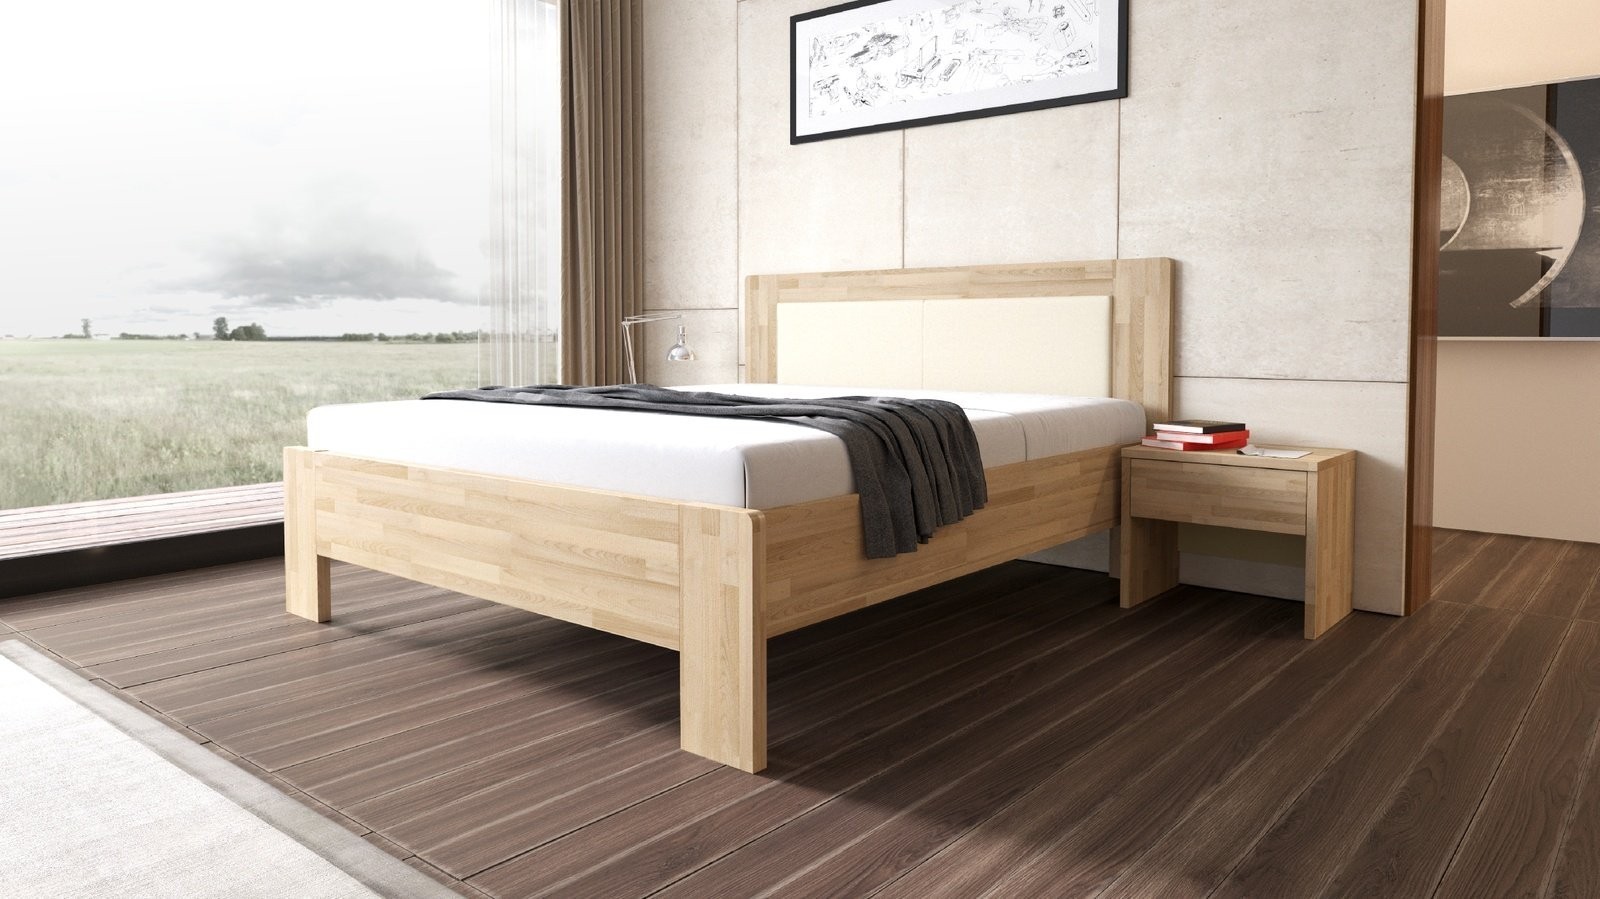 TEXPOL LÍVIA - masivní dubová postel s čalouněným čelem 200 x 200 cm, dub masiv + čalouněné čelo